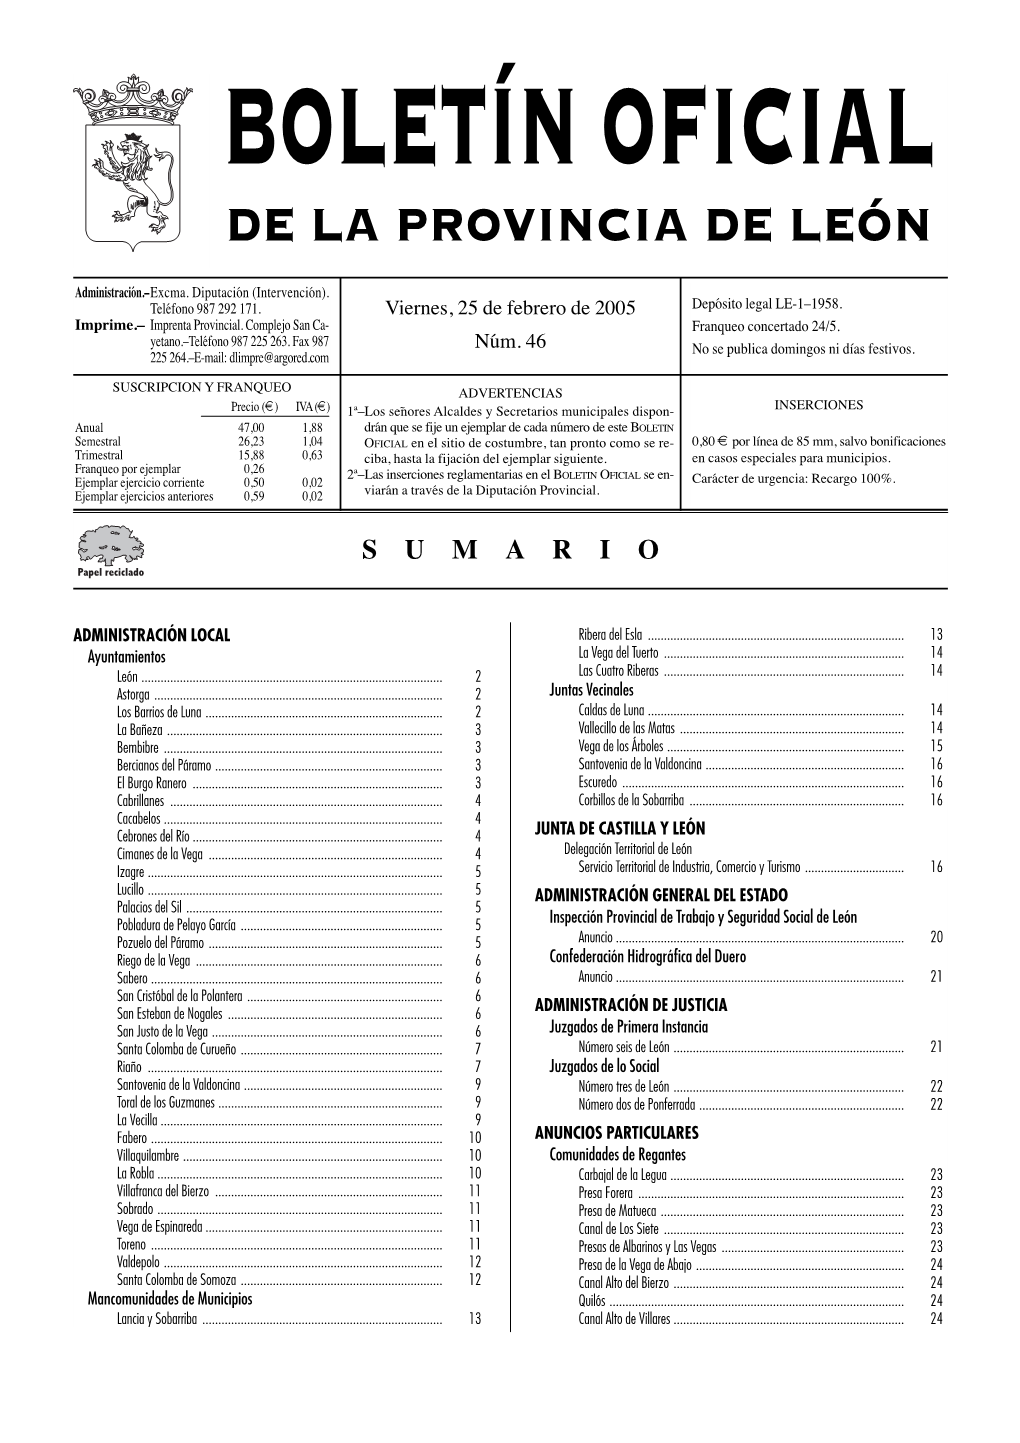 De La Provincia De León